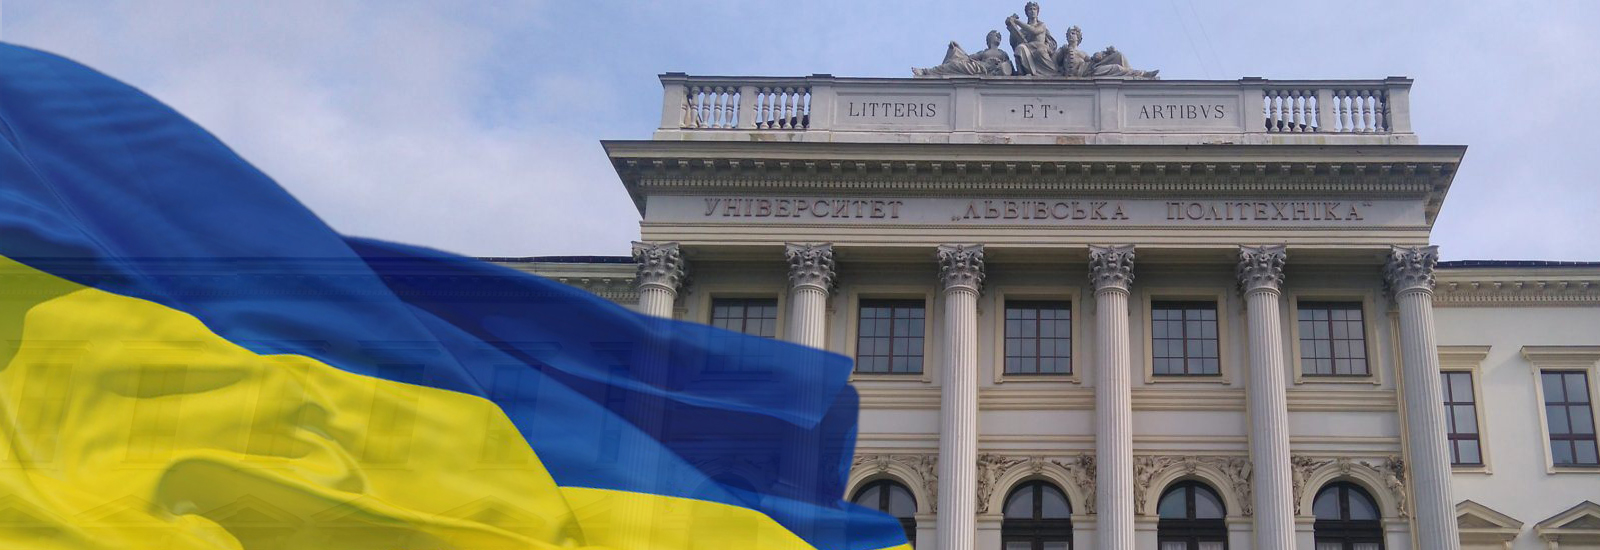 прапор України і будівля Політехніки